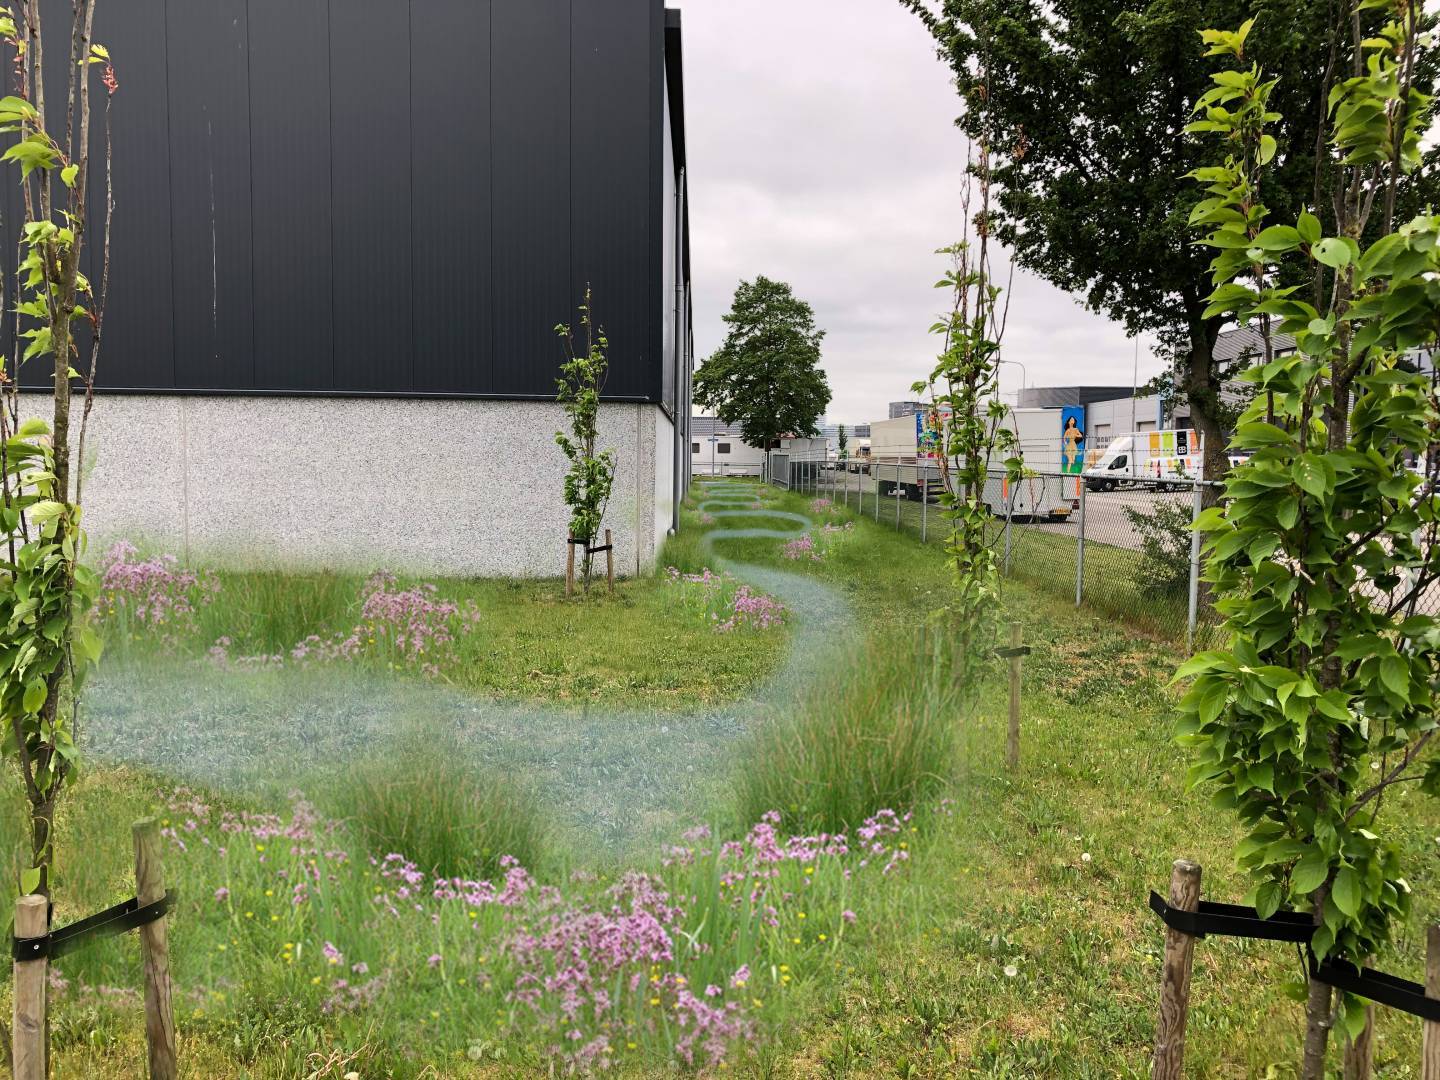 Euvelgunne, Groningen - Wij onderhouden dit groene bedrijventerrein dat klimaat én natuur ten goede komt